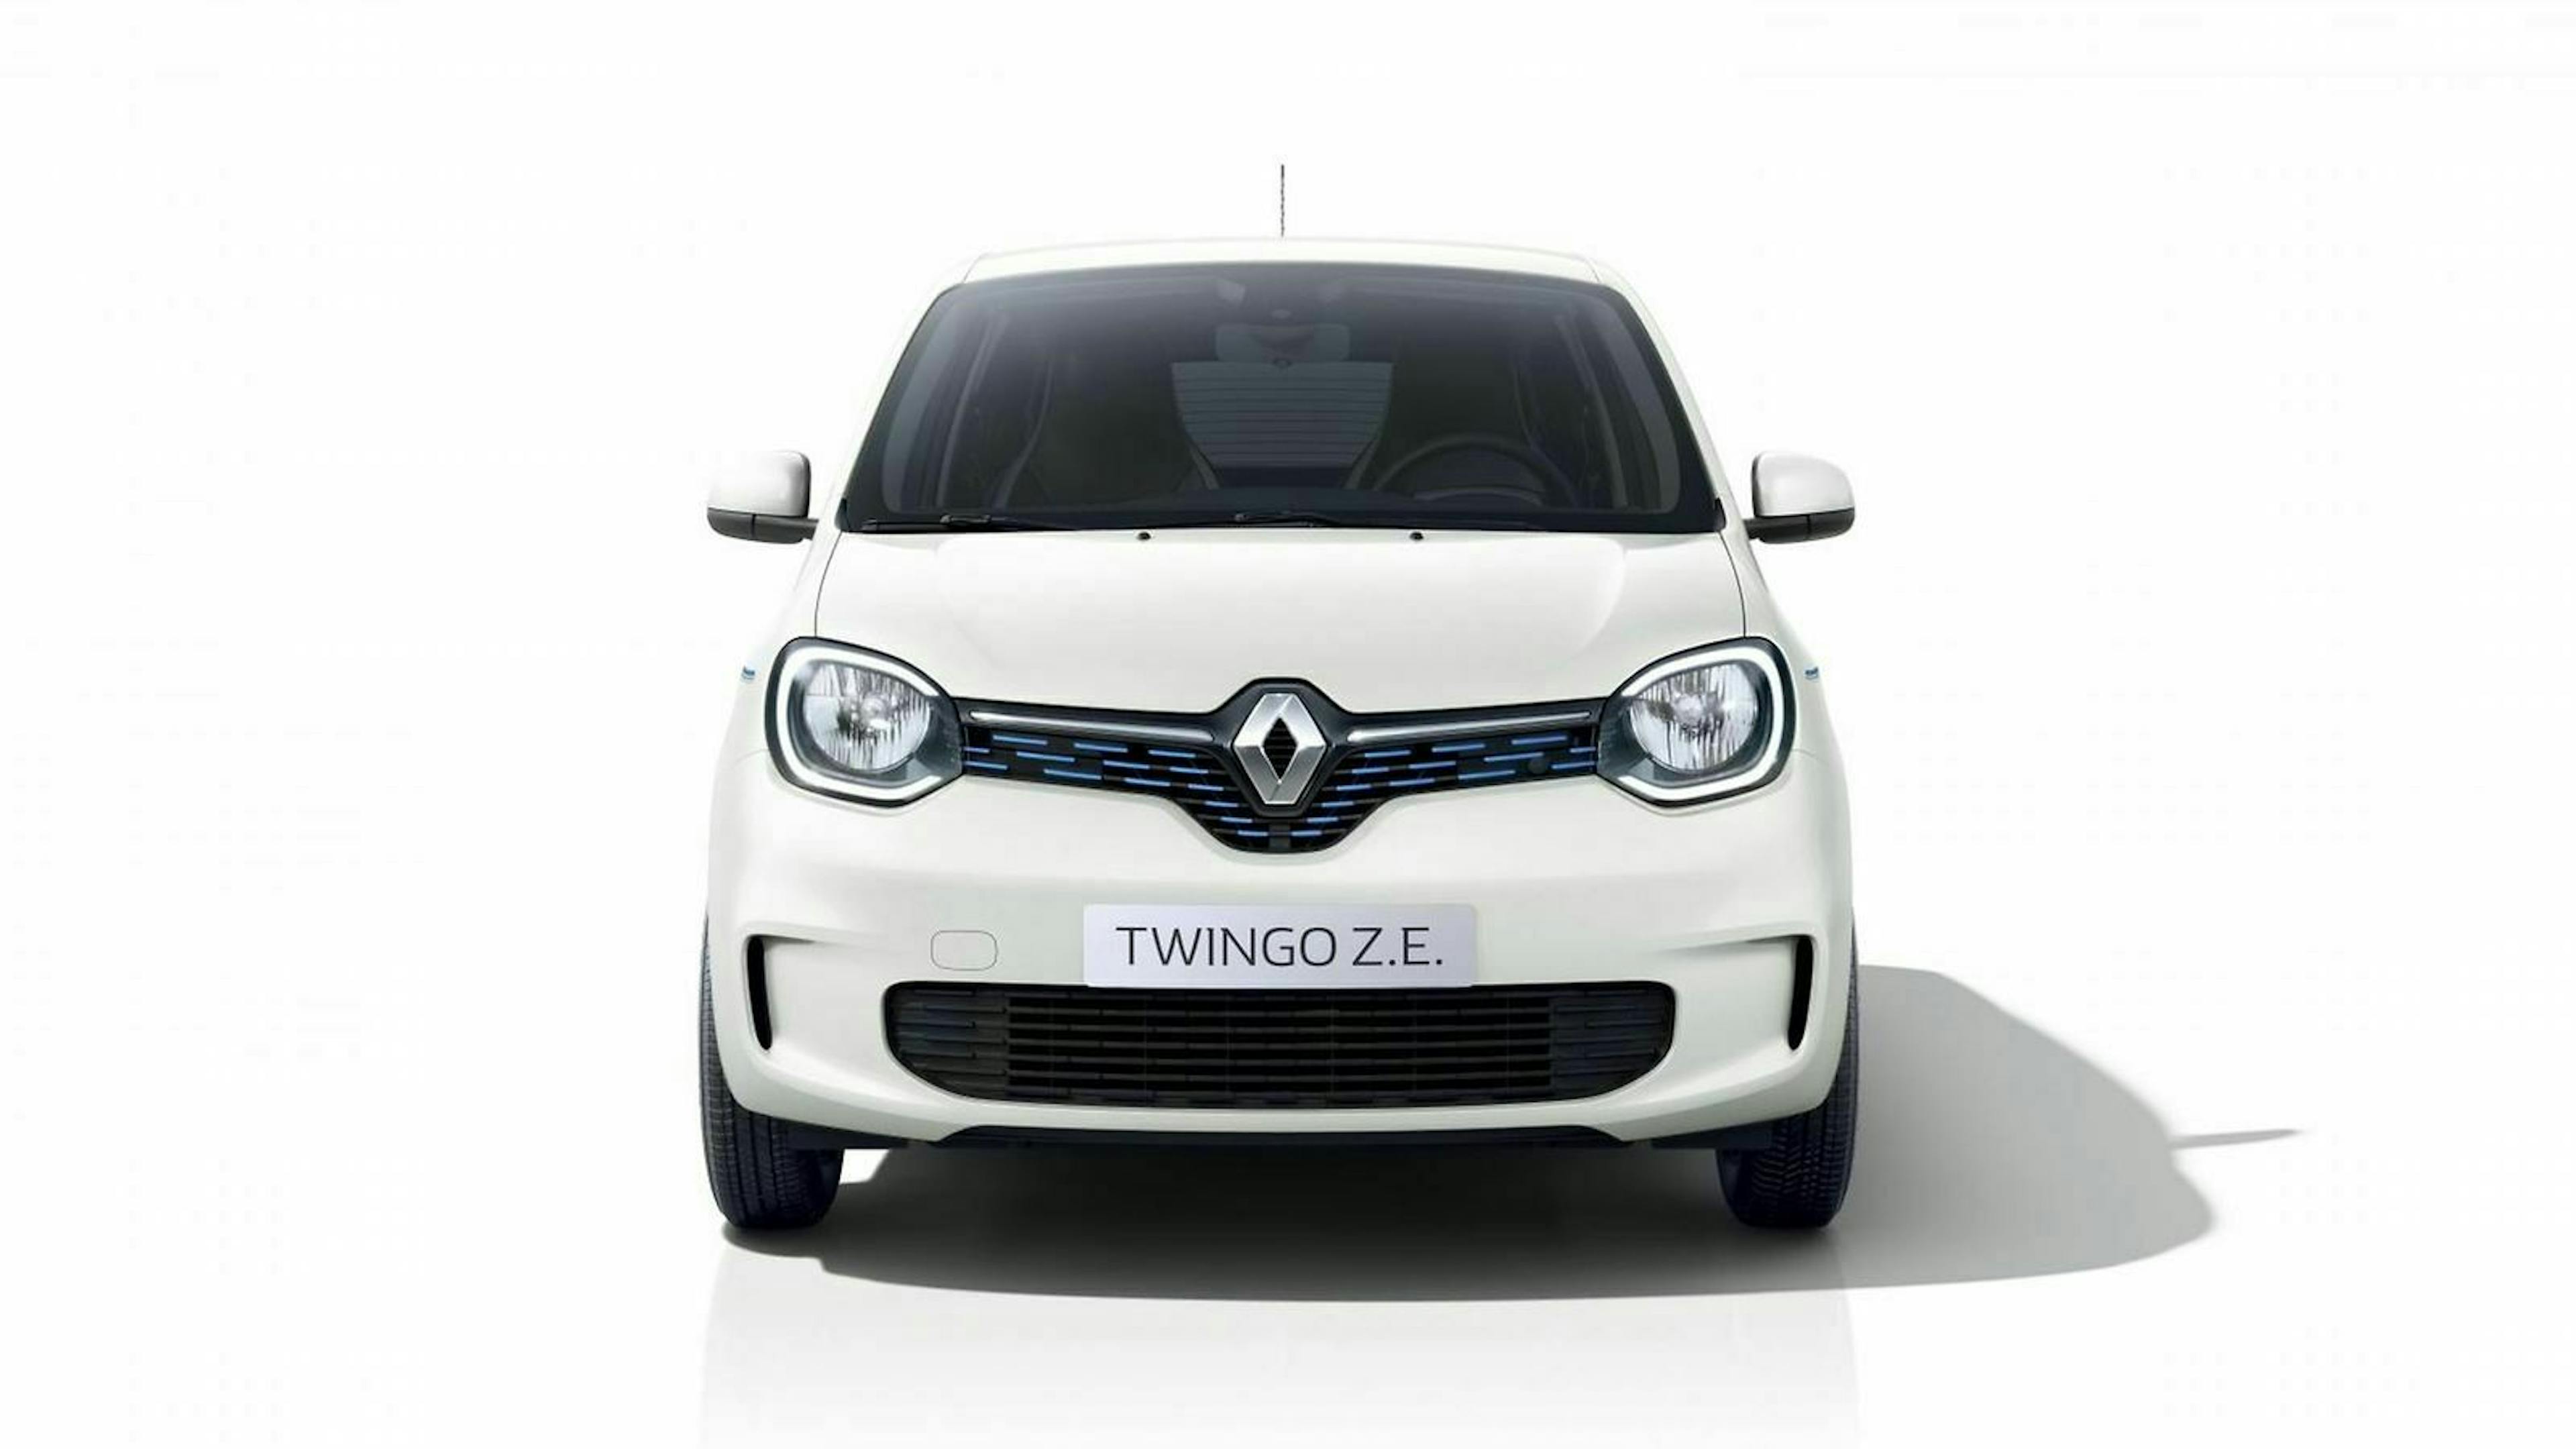 Renault Twingo Z.E. in der Frontansicht, stehend